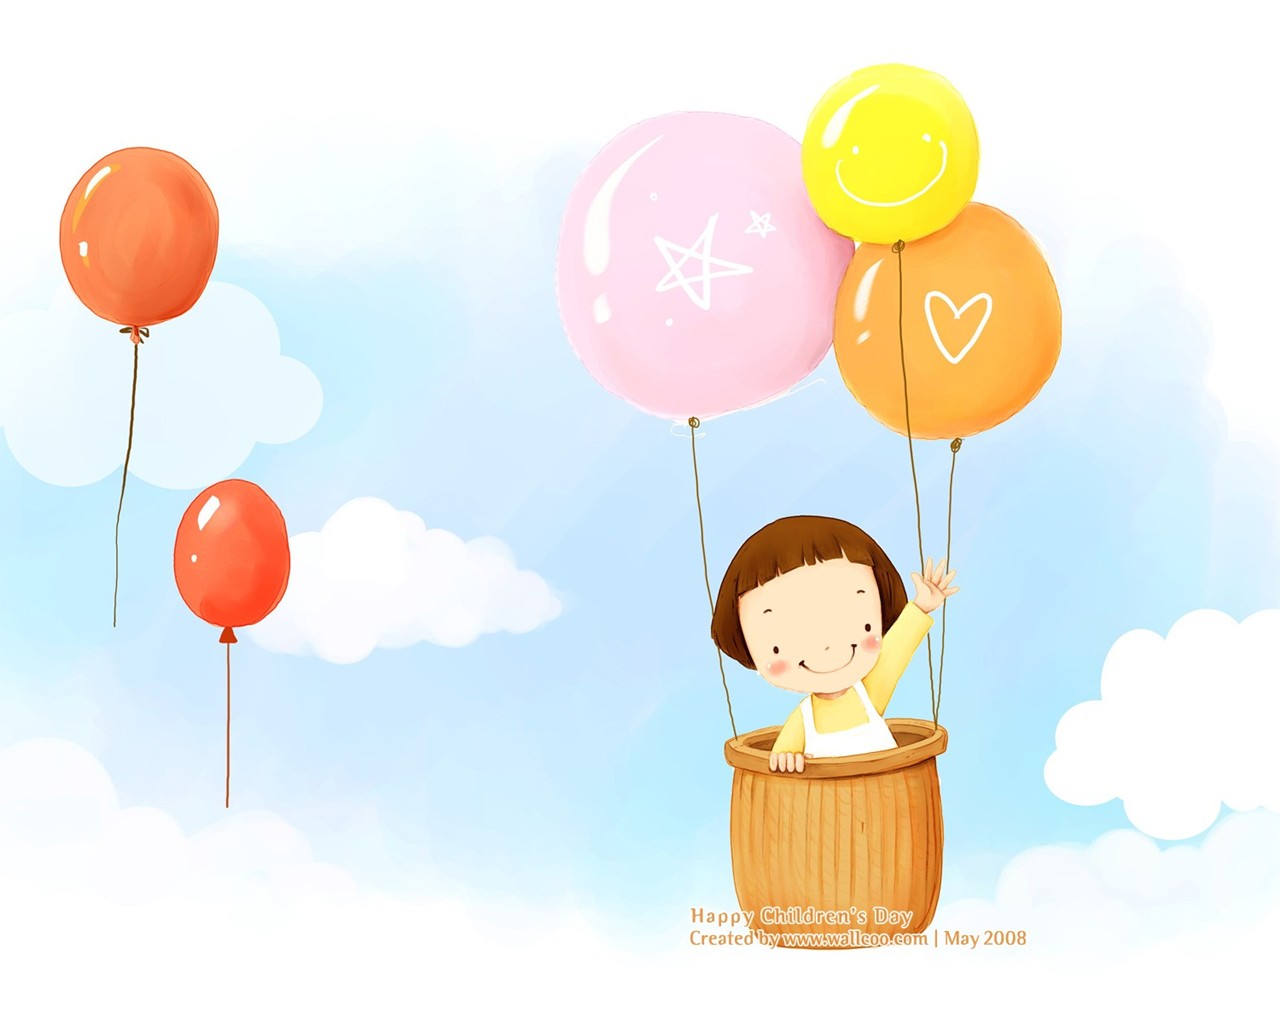 Lovely Children's Day wallpaper illustrator #14 - 1280x1024